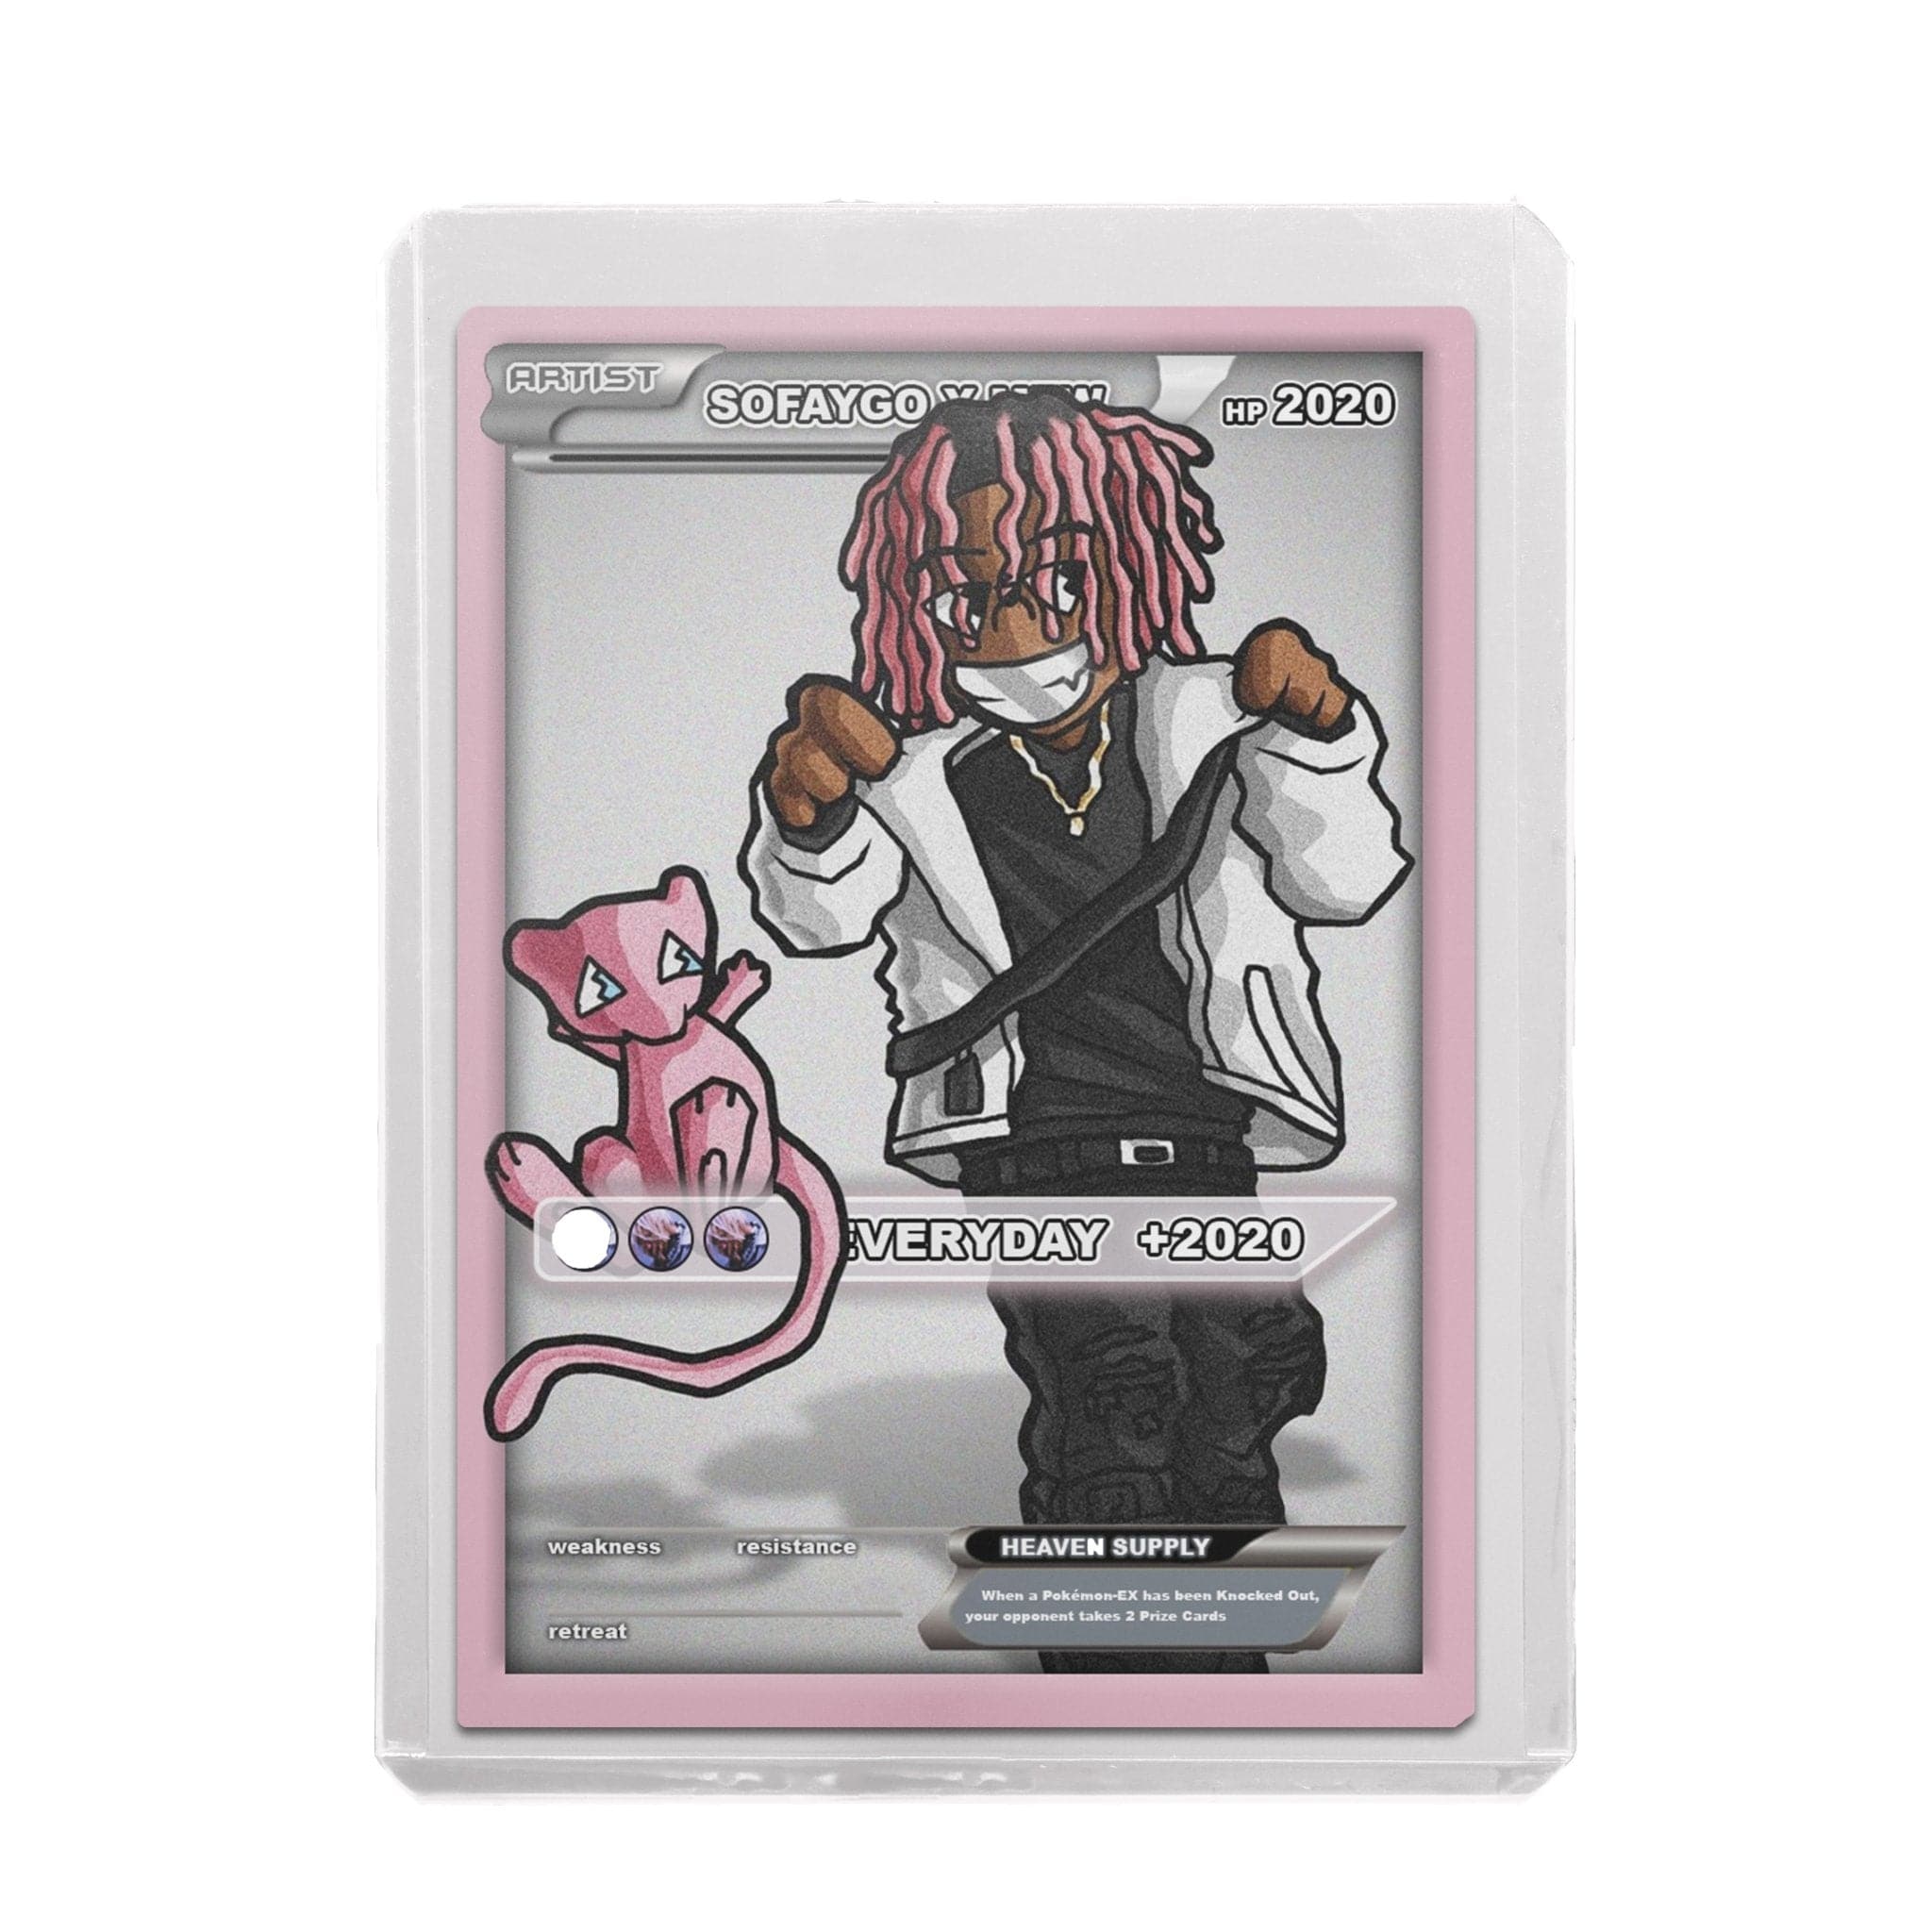 SoFaygo Custom Pokémon Card